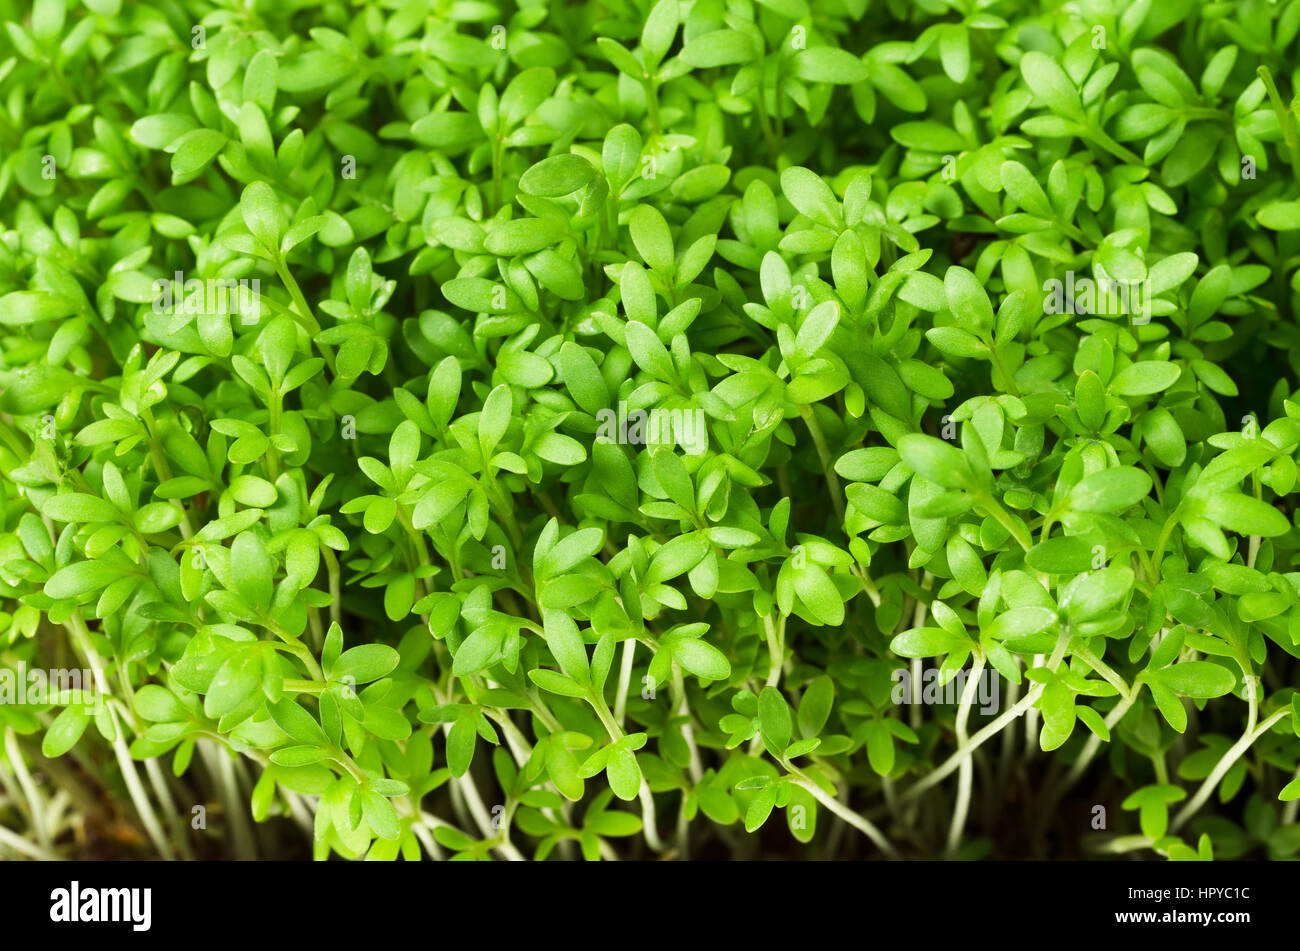 Le cresson alénois, de jeunes plants, macro photo d'en haut. Lepidium sativum, herbes comestibles. Microgreen. Banque D'Images